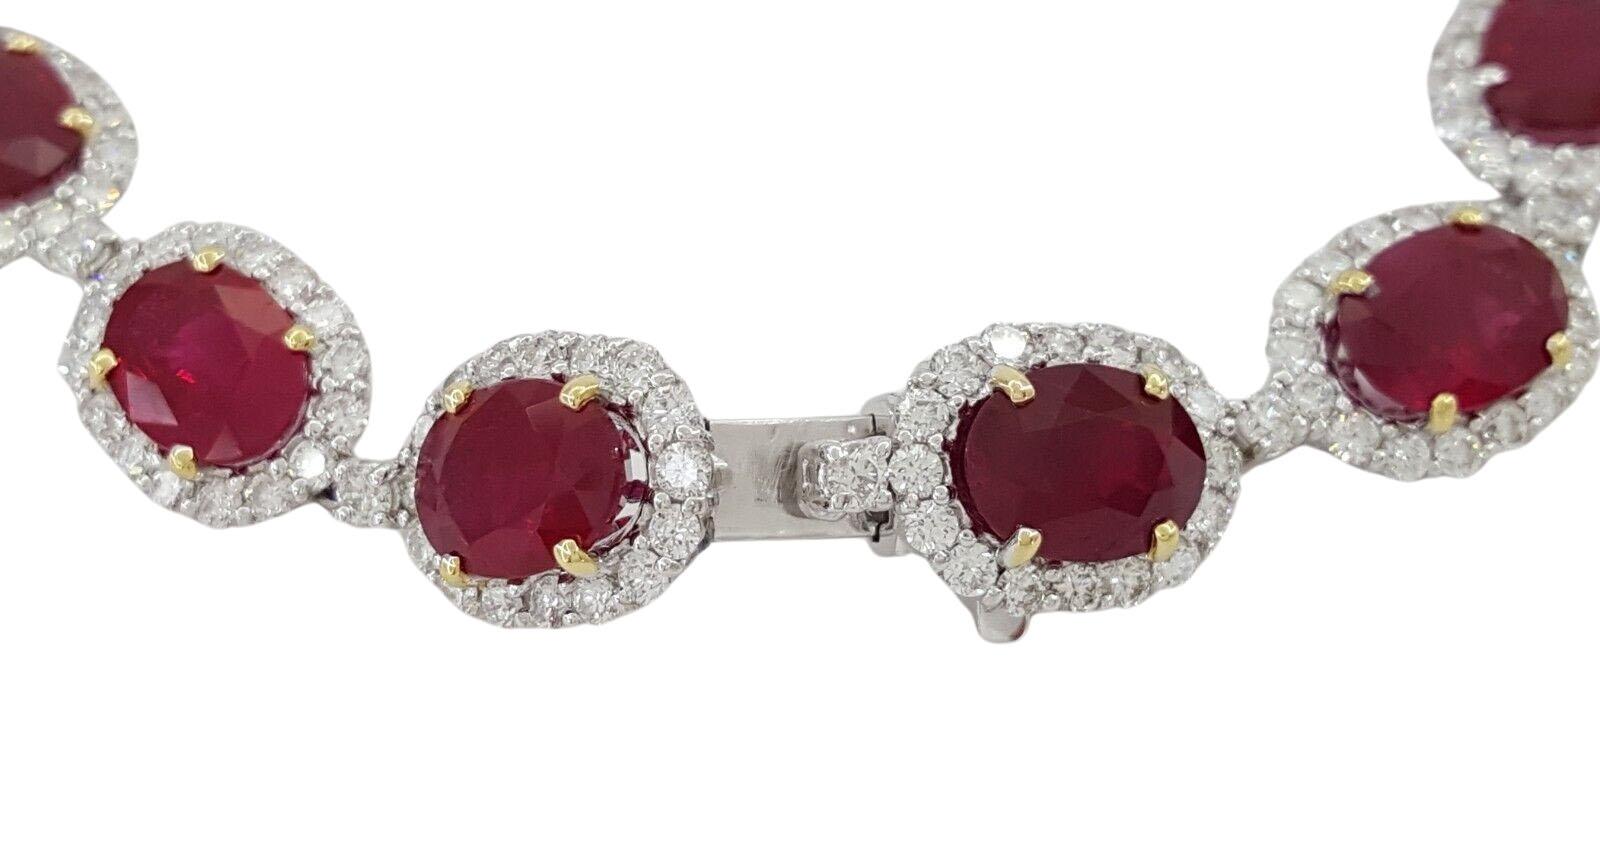 Contemporary 24 Carat Oval Burma Pigeon Blood Color Ruby & Diamond Halo Bracelet For Sale